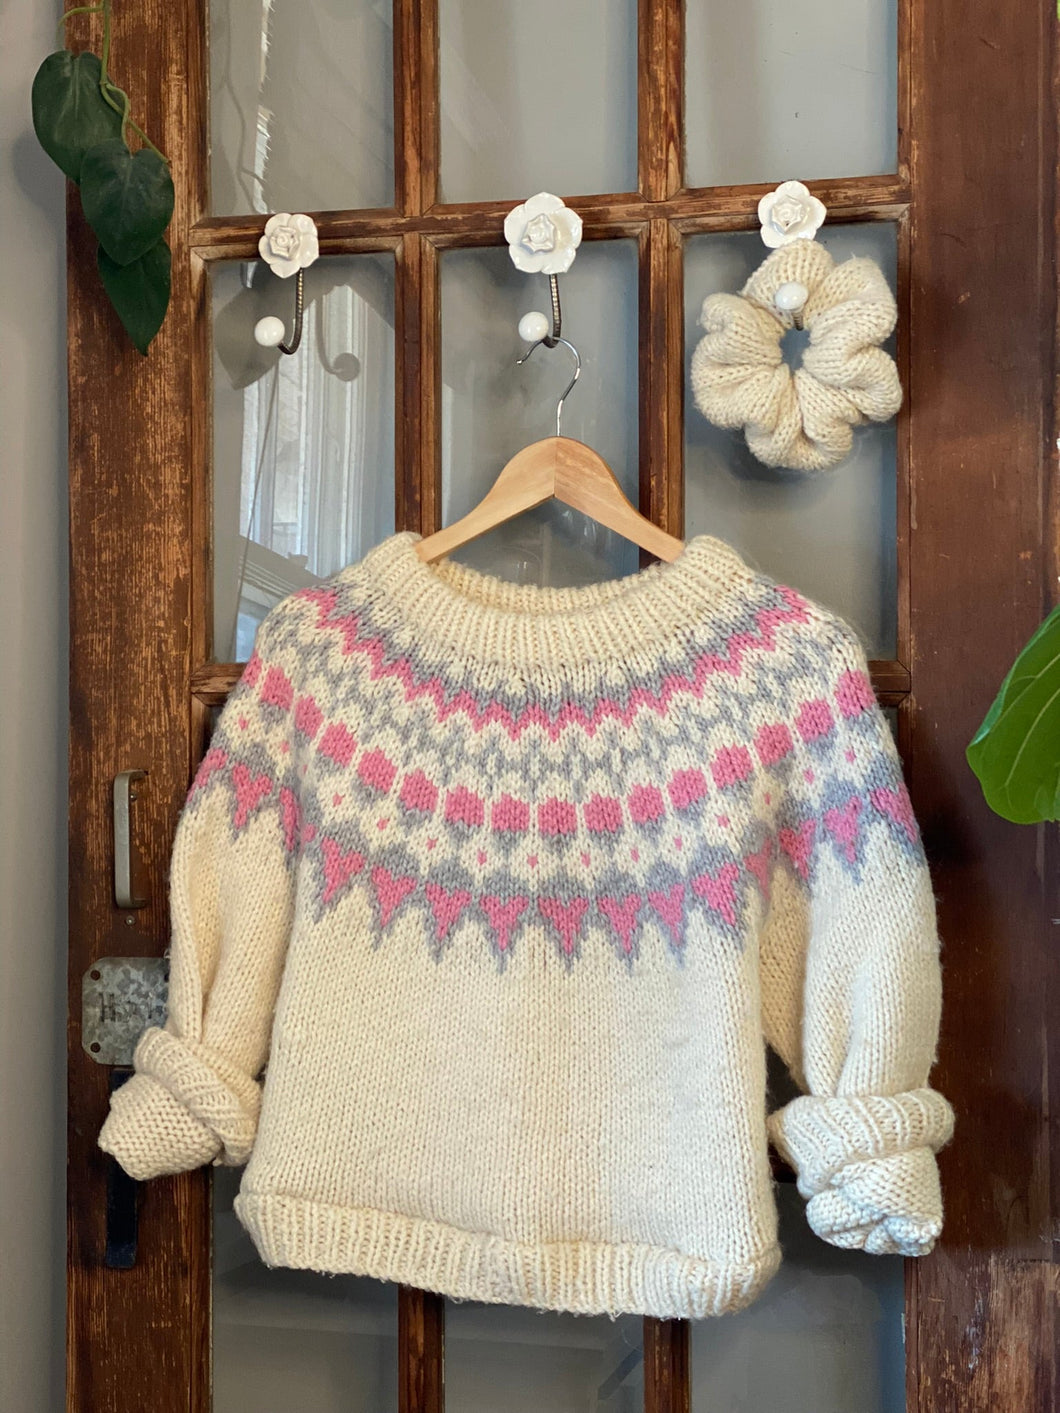 the classic fair isle sweater set